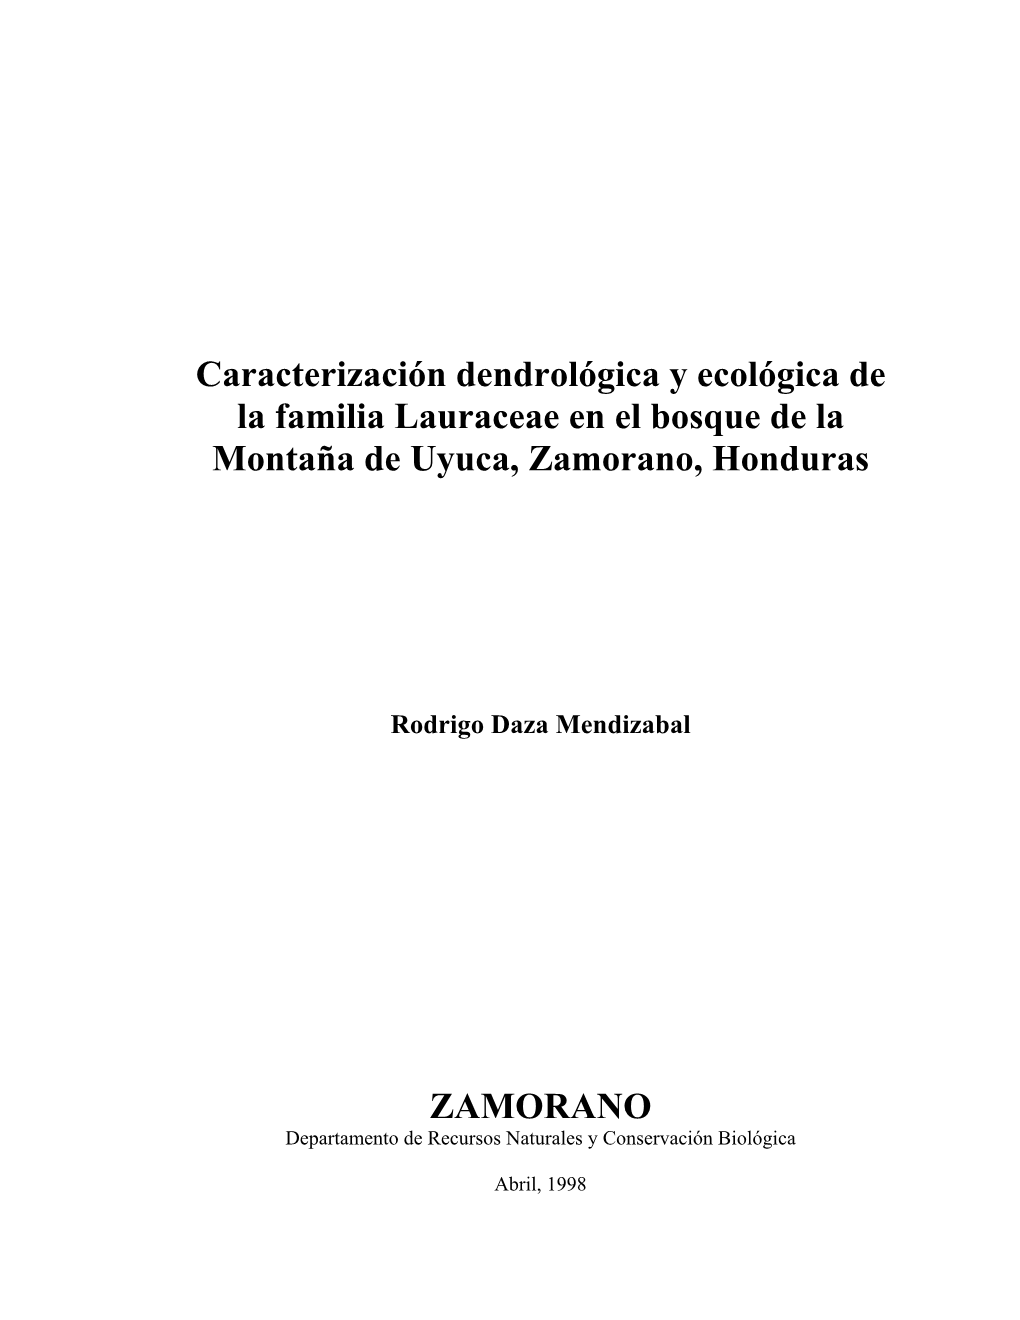 Caracterización Dendrológica Y Ecológica De La Familia Lauraceae En El Bosque De La Montaña De Uyuca, Zamorano, Honduras